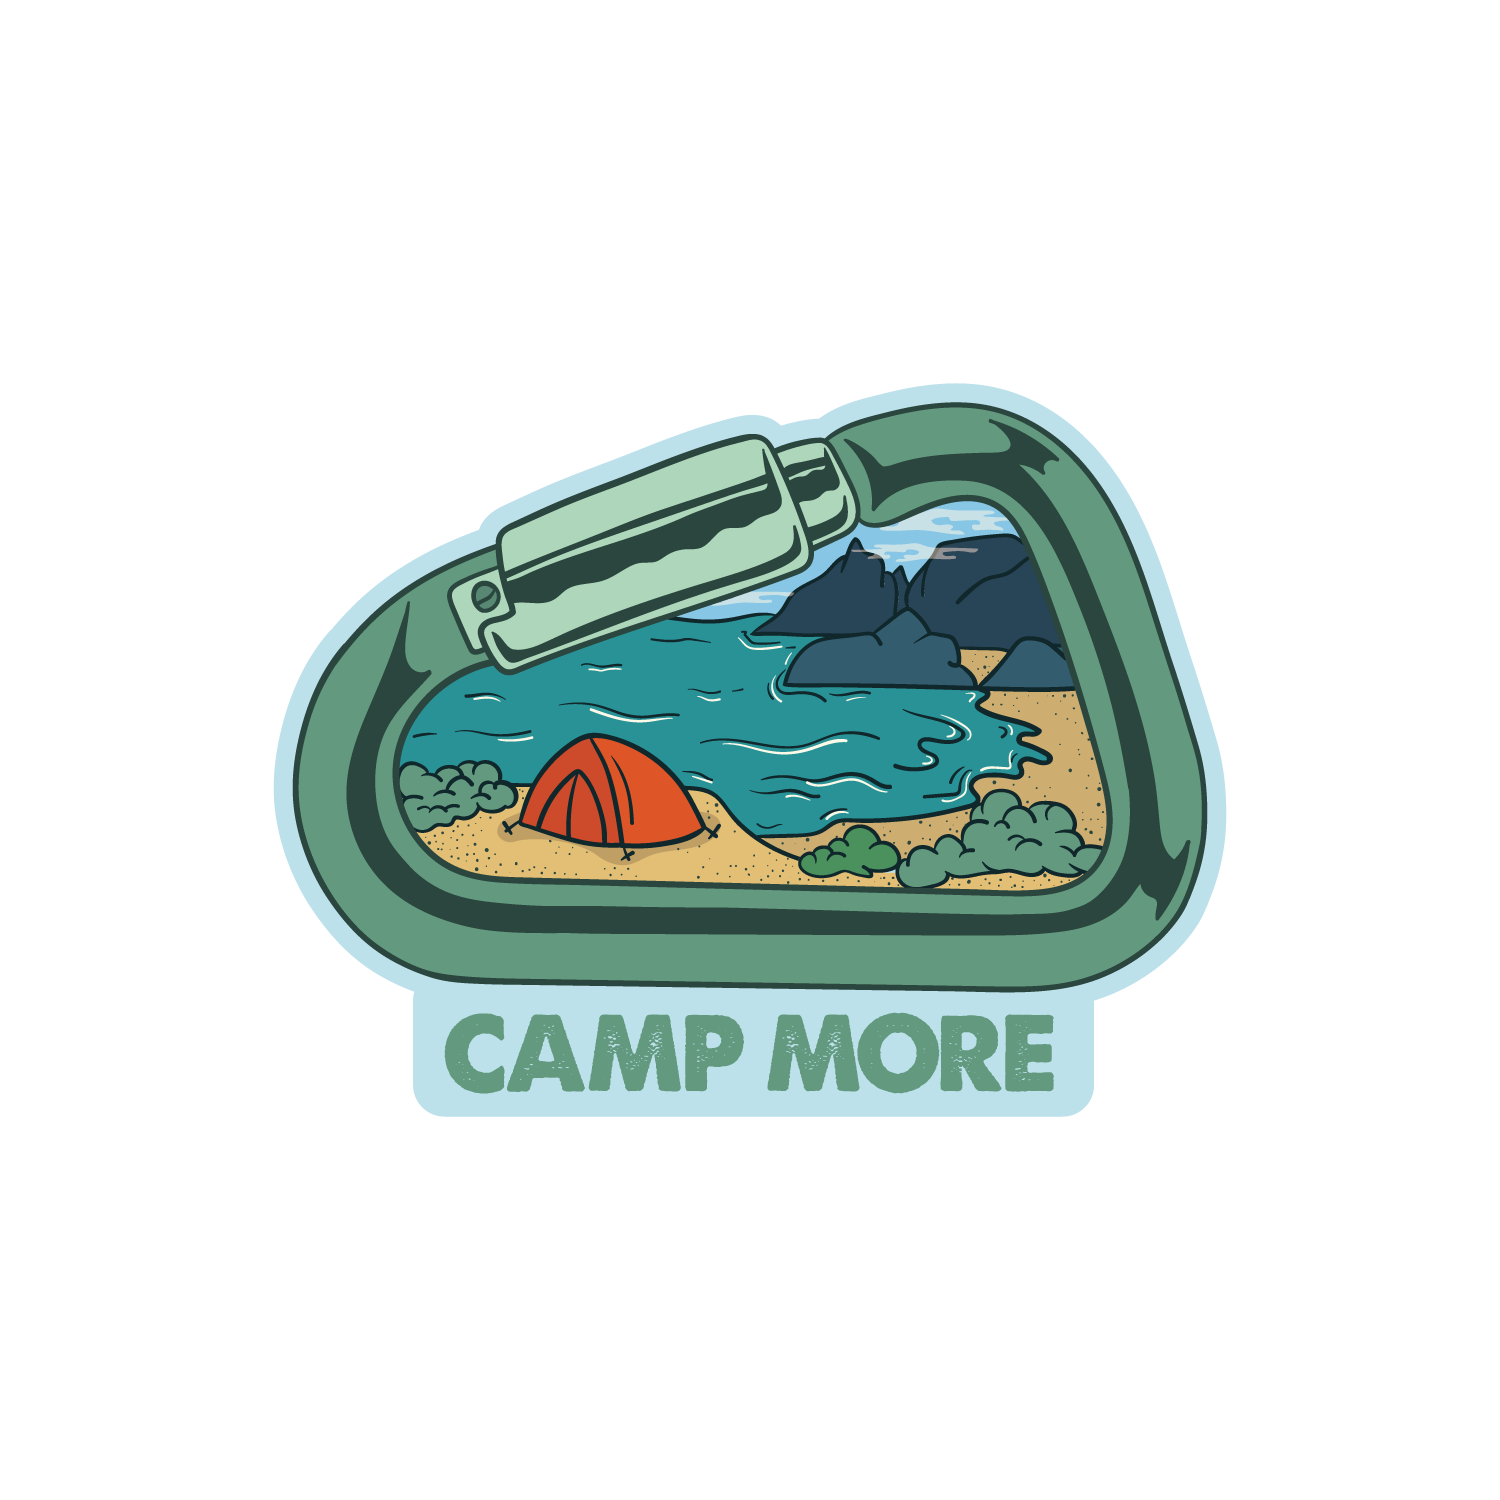 キャンプモア カラビナ (Camp Sayings-Camp More Tent Carabiner)